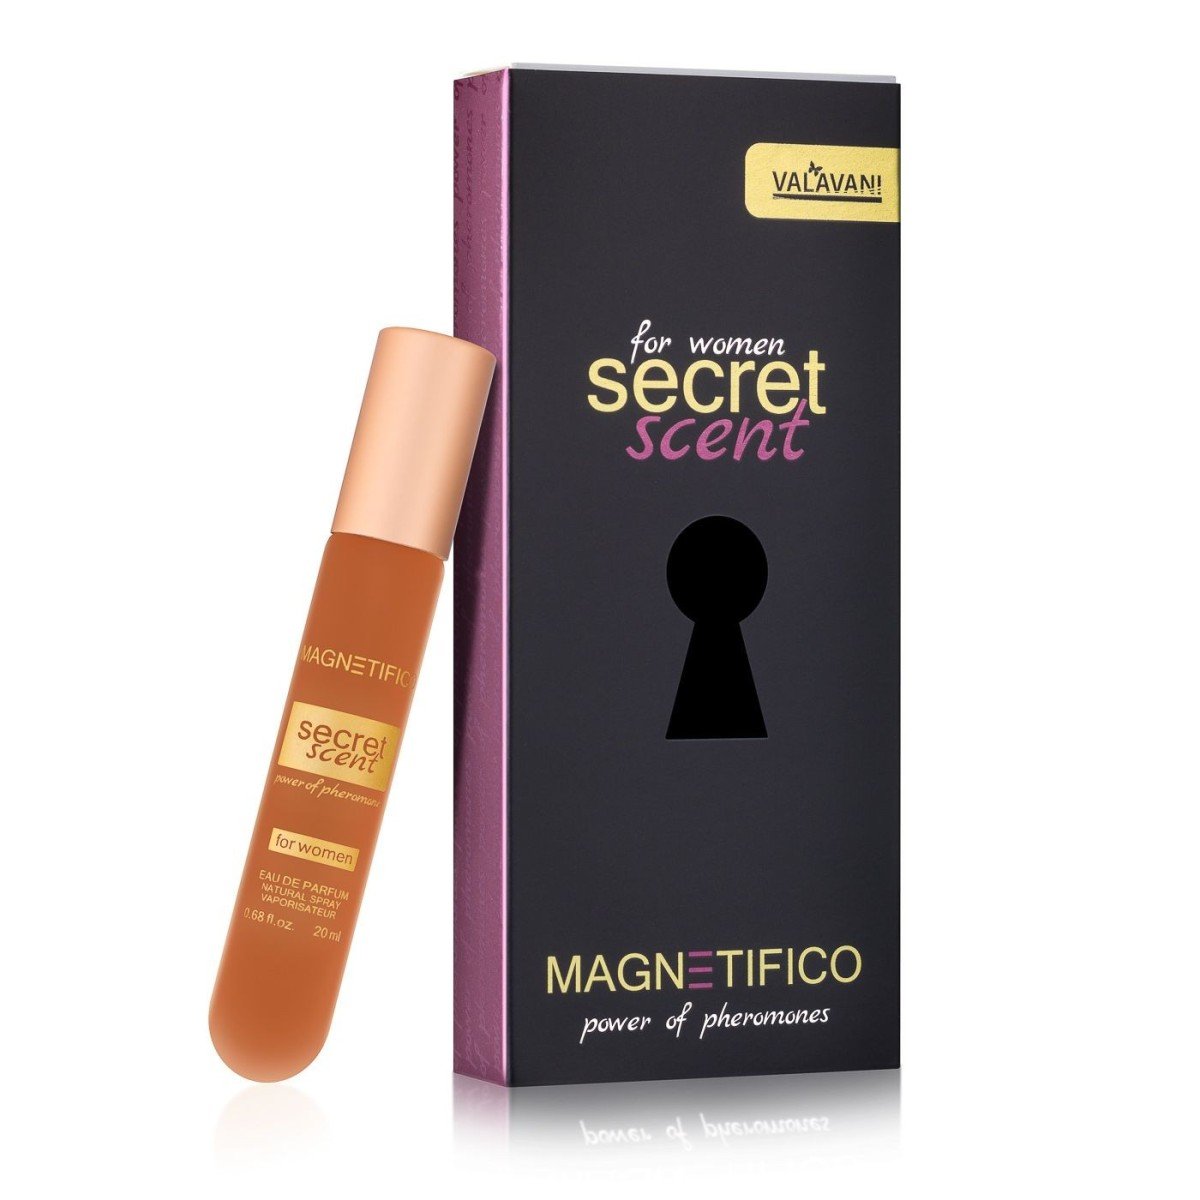 Valavani Magnetifico Secret Scent for Women 20 ml, květinovo-orientální dámský parfém pro zvýšení sexuální přitažlivosti